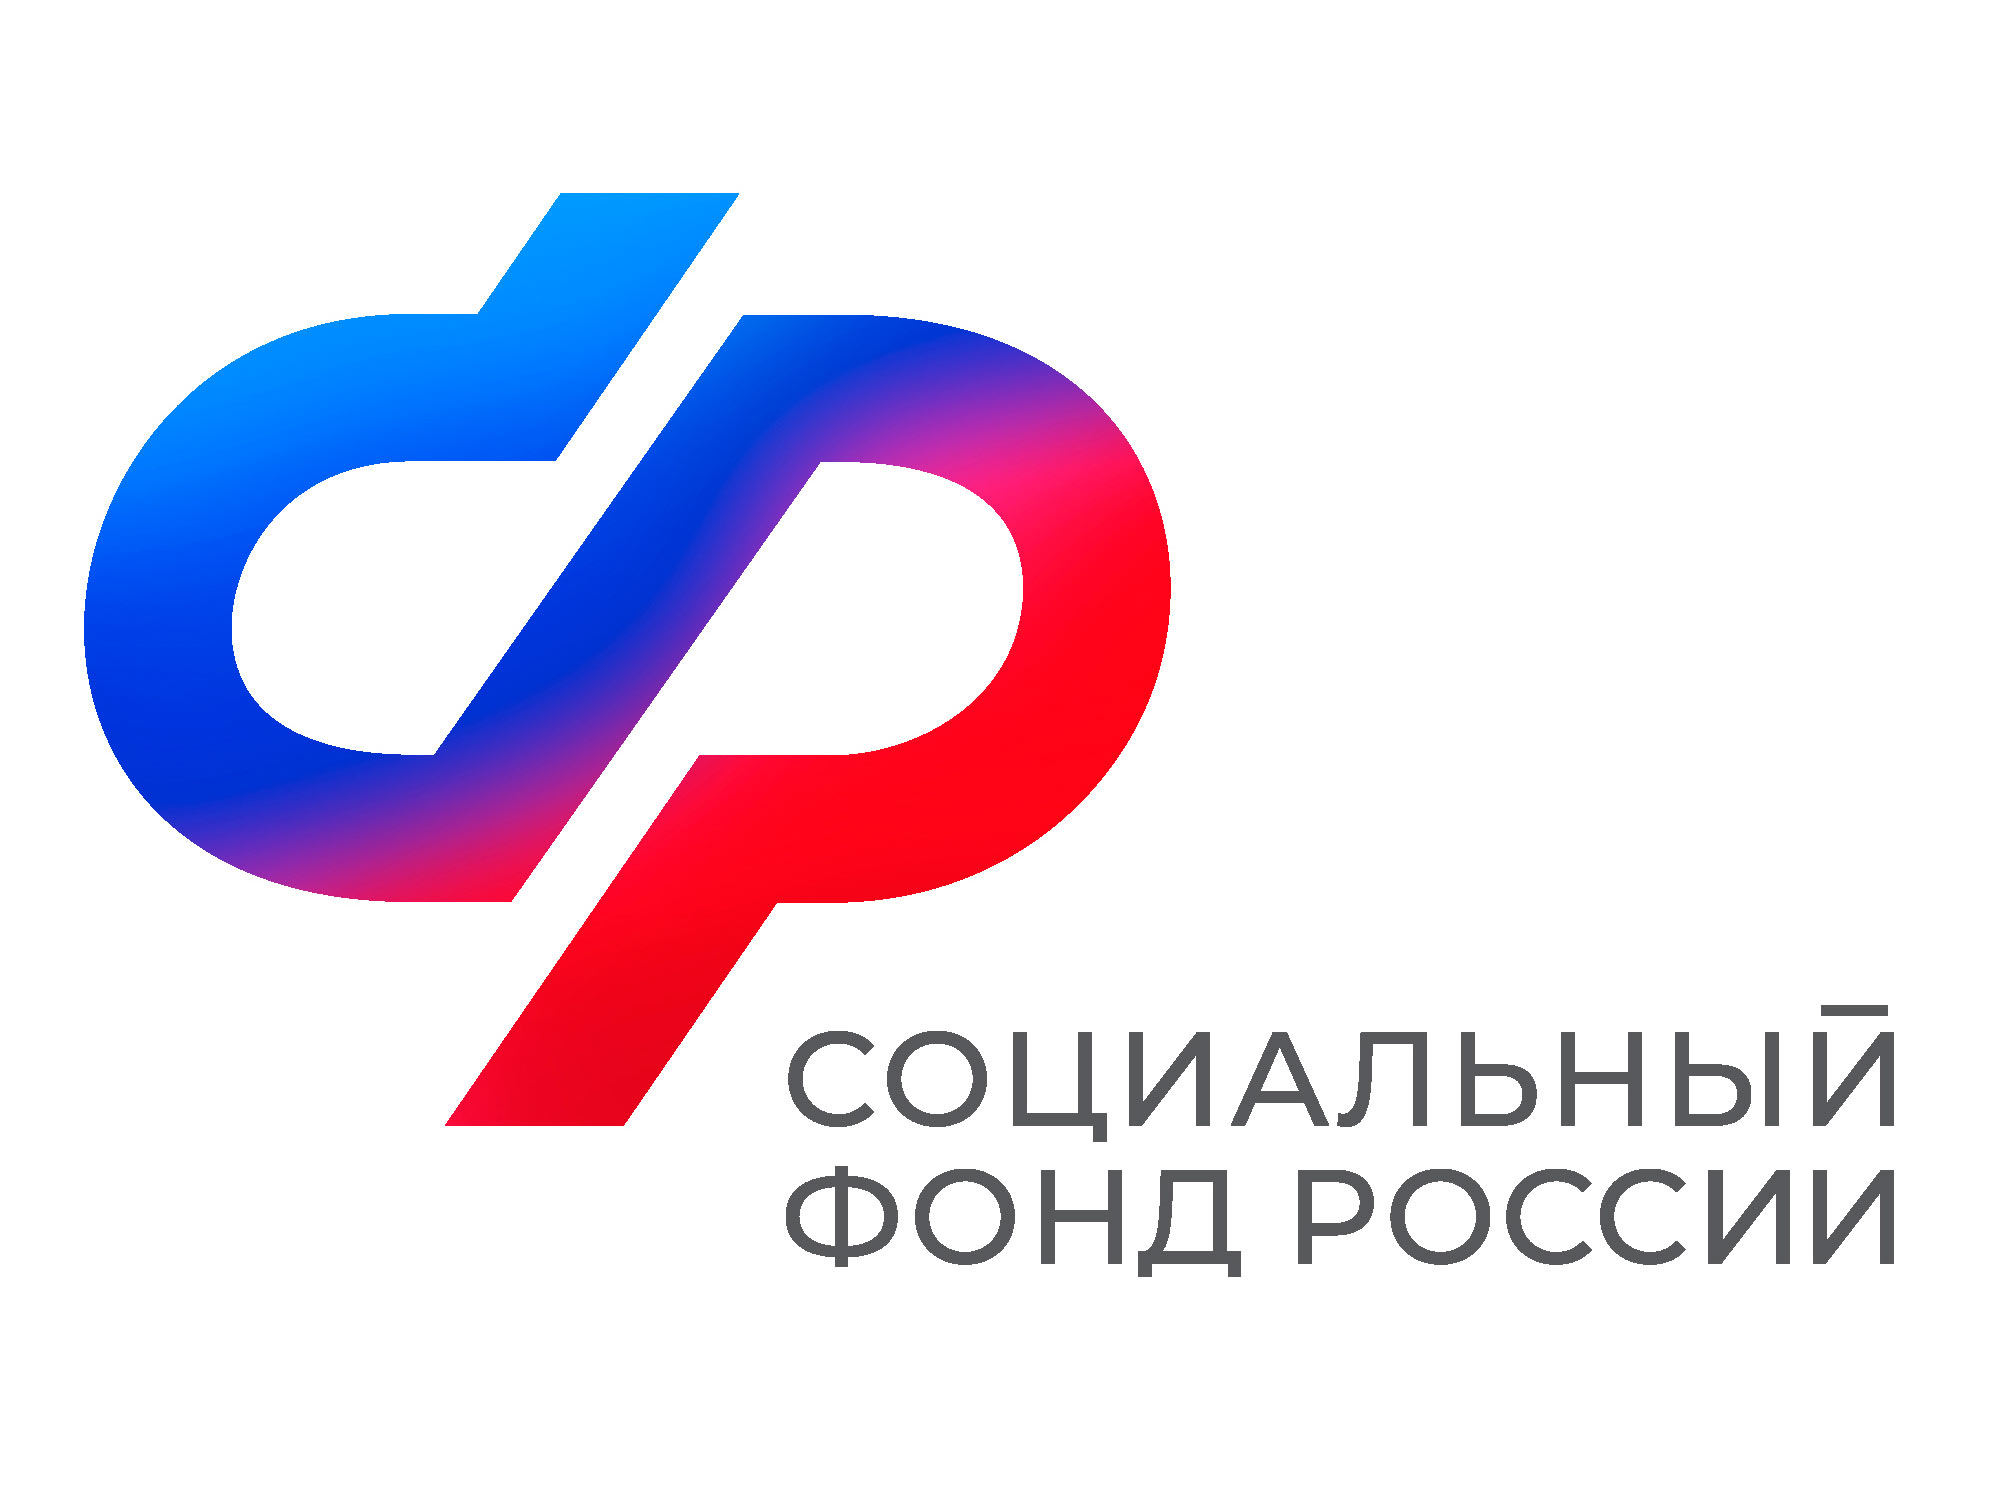 Более 500 жителей Ульяновской области приобрели технические средства реабилитации с помощью электронного сертификата